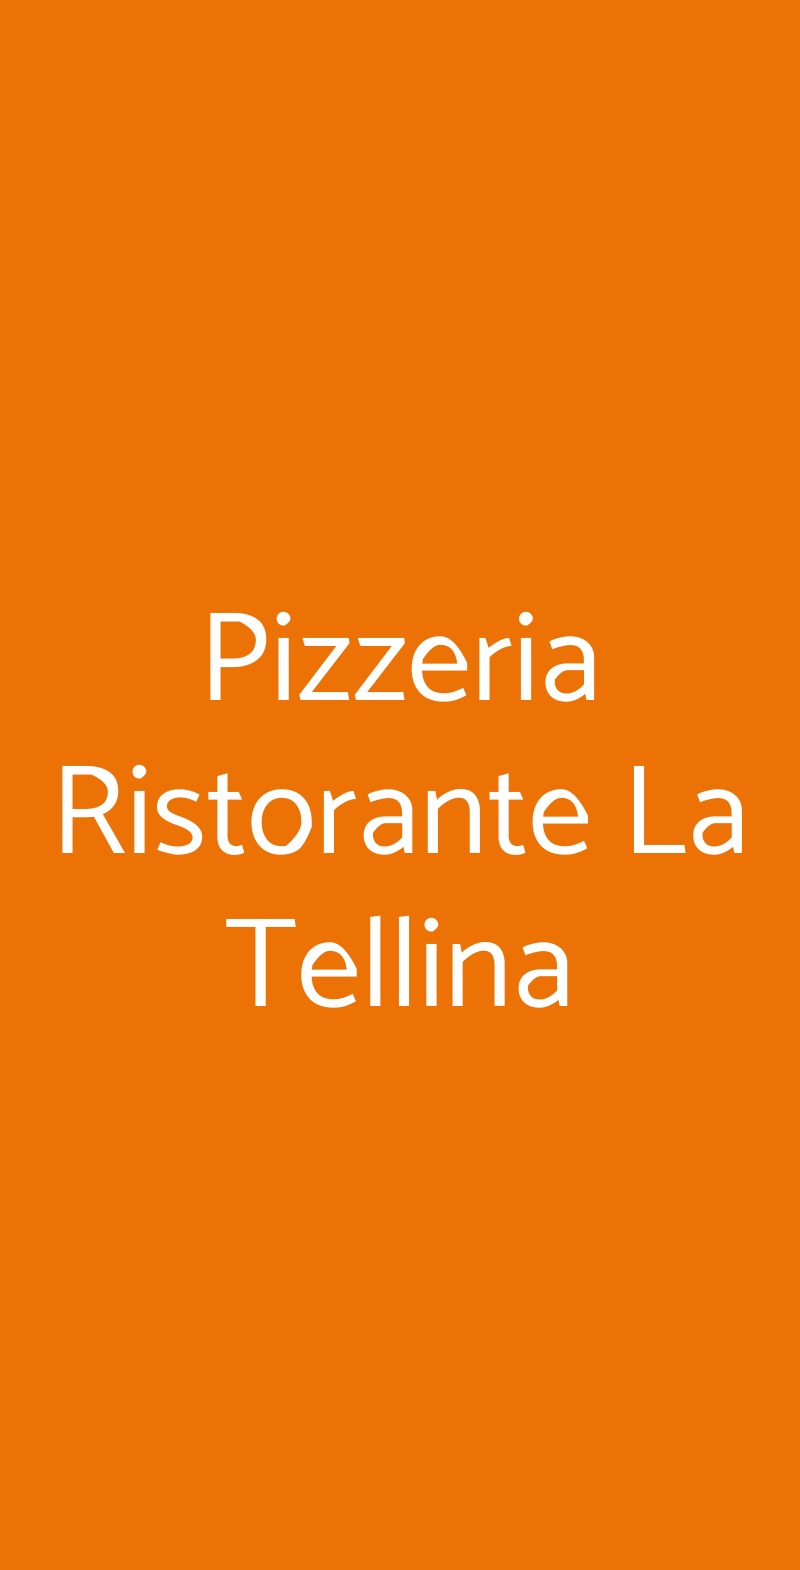 Pizzeria Ristorante La Tellina Milano menù 1 pagina